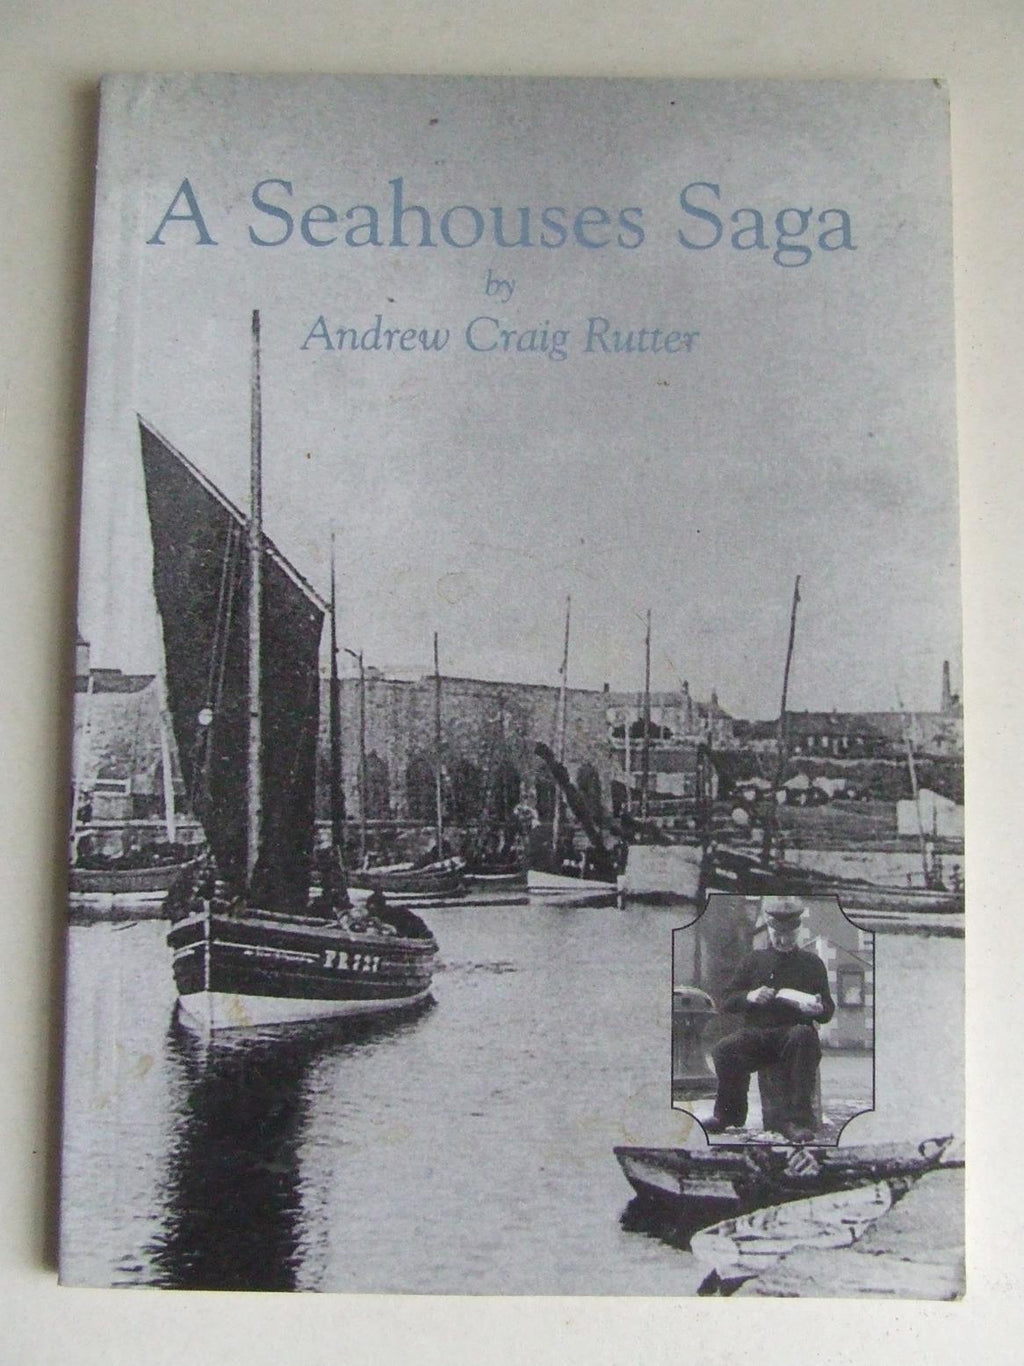 A Seahouses Saga